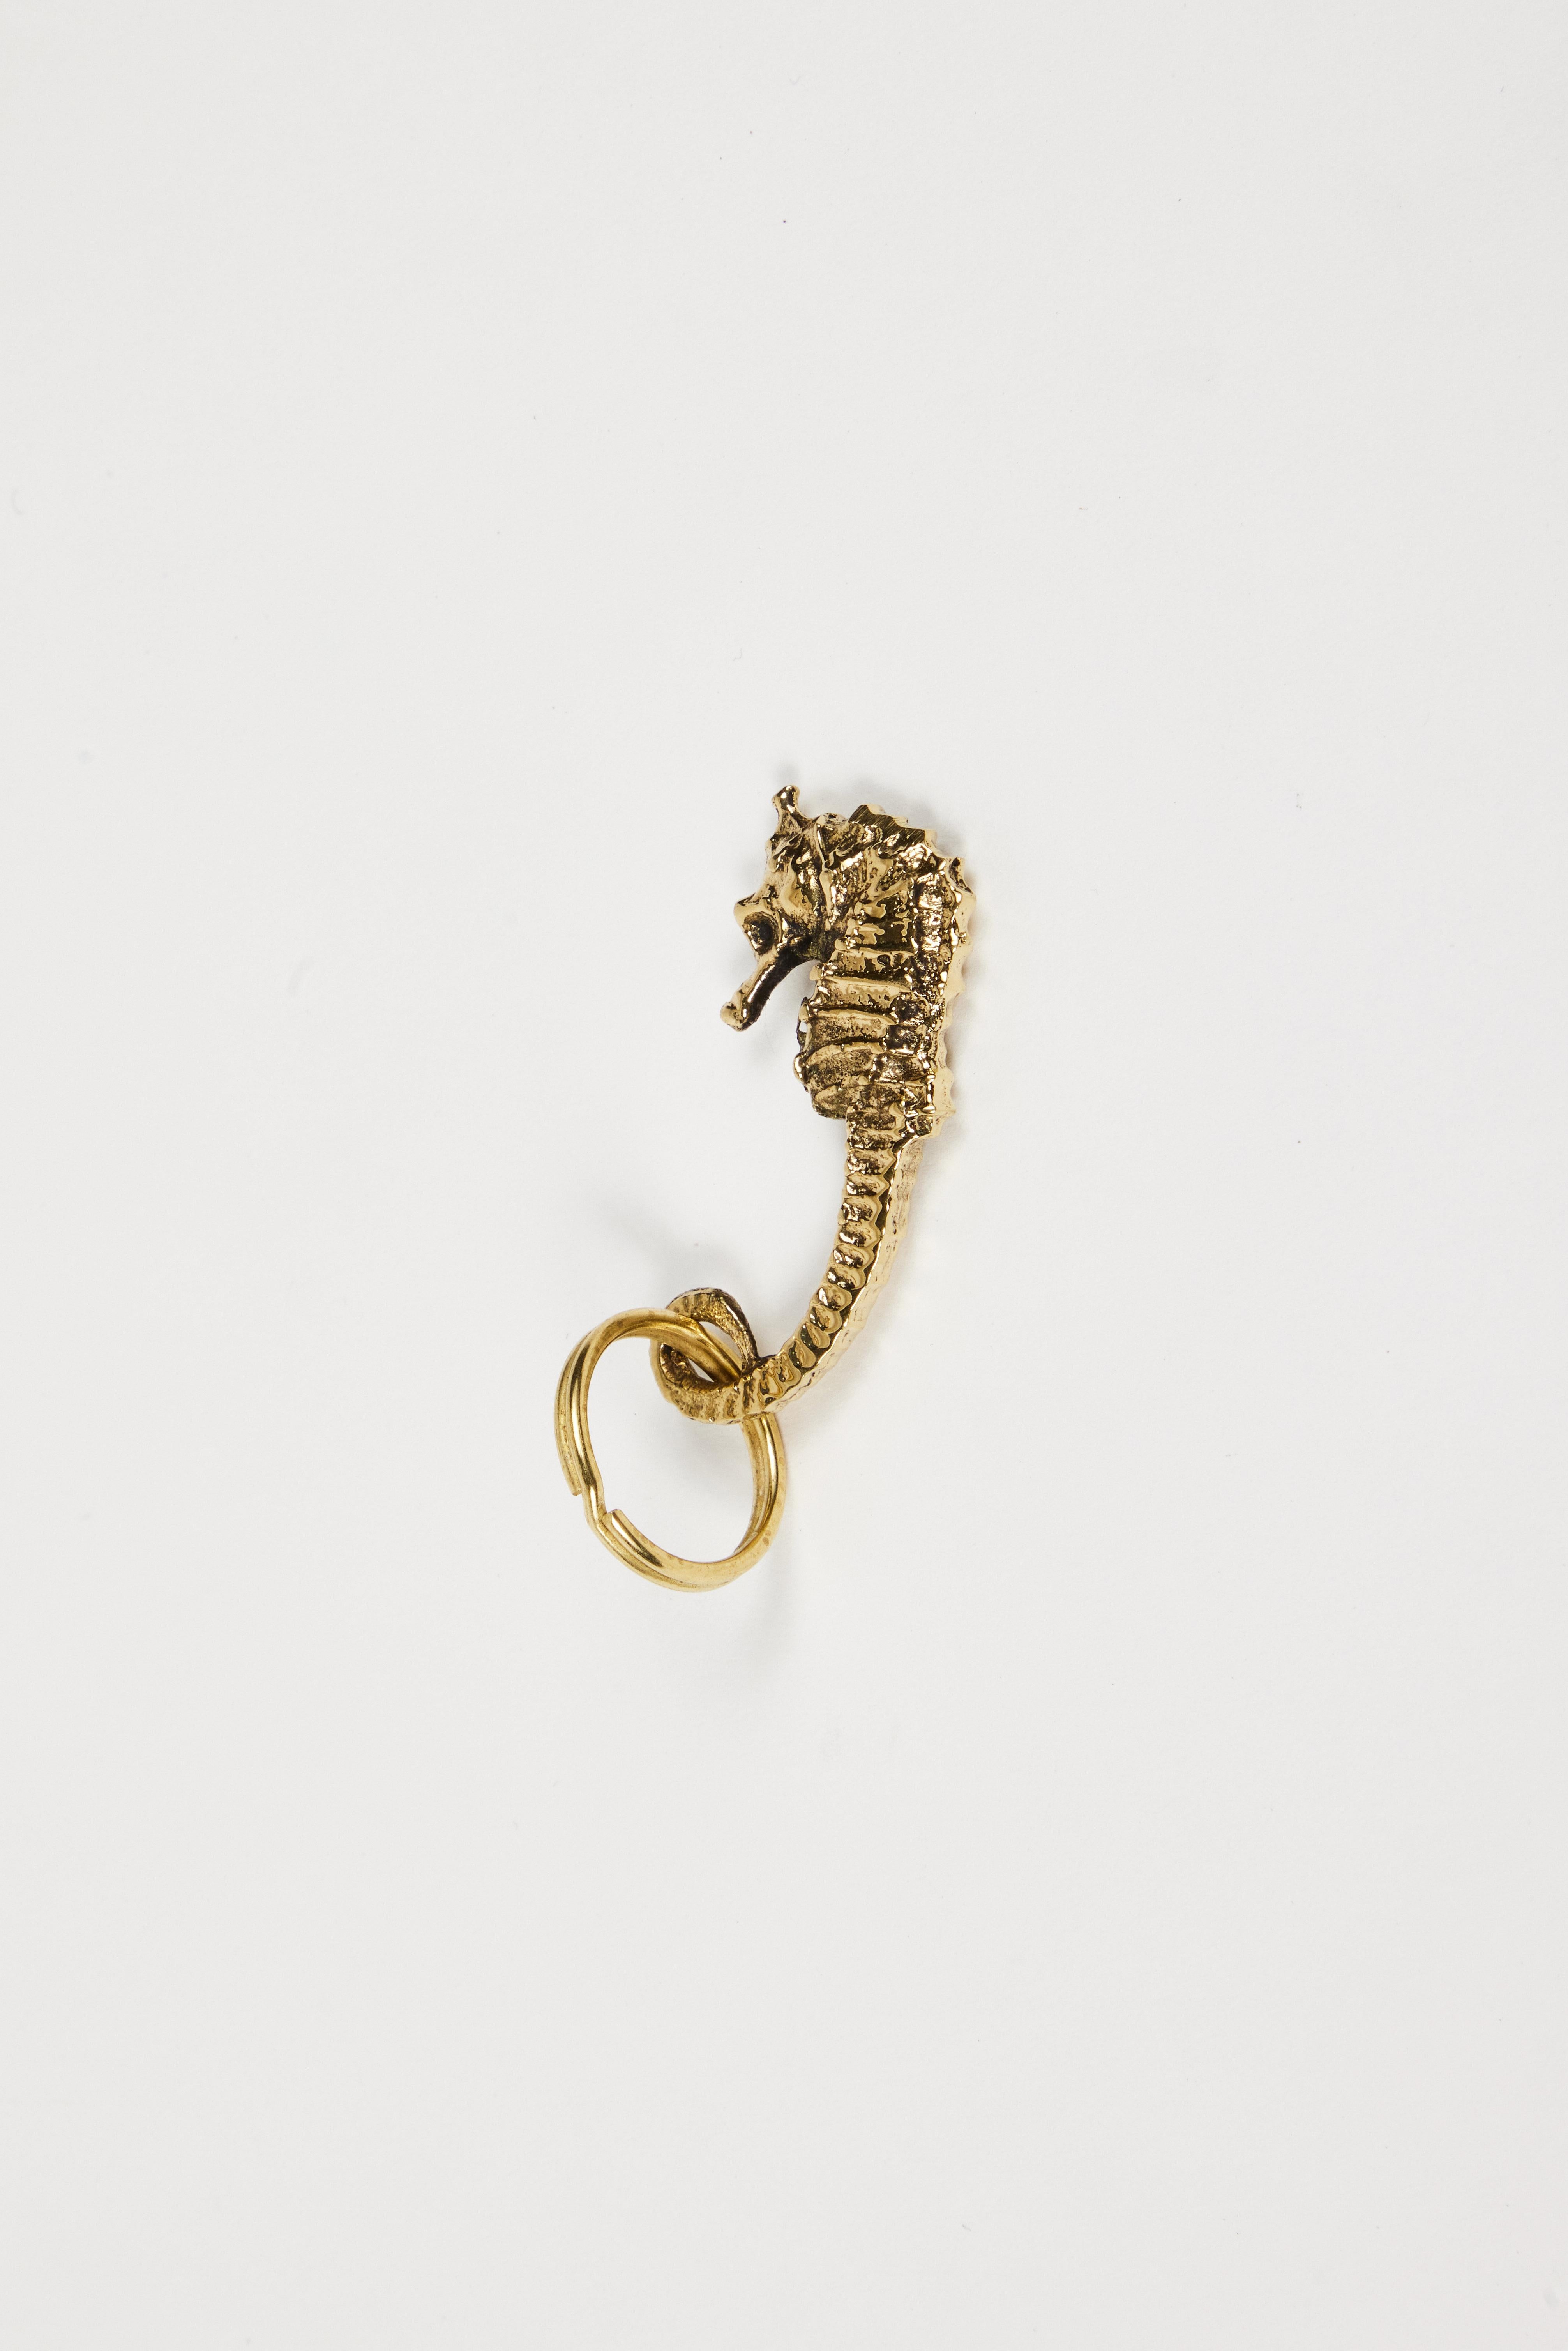 Porte-clés figurine en laiton Carl Auböck modèle #5655 'Hippocampe'. Conçu dans les années 1950, cet objet incroyablement raffiné et sculptural est fabriqué à la main en laiton poli. 

Le prix est par article. Un article en stock prêt à être